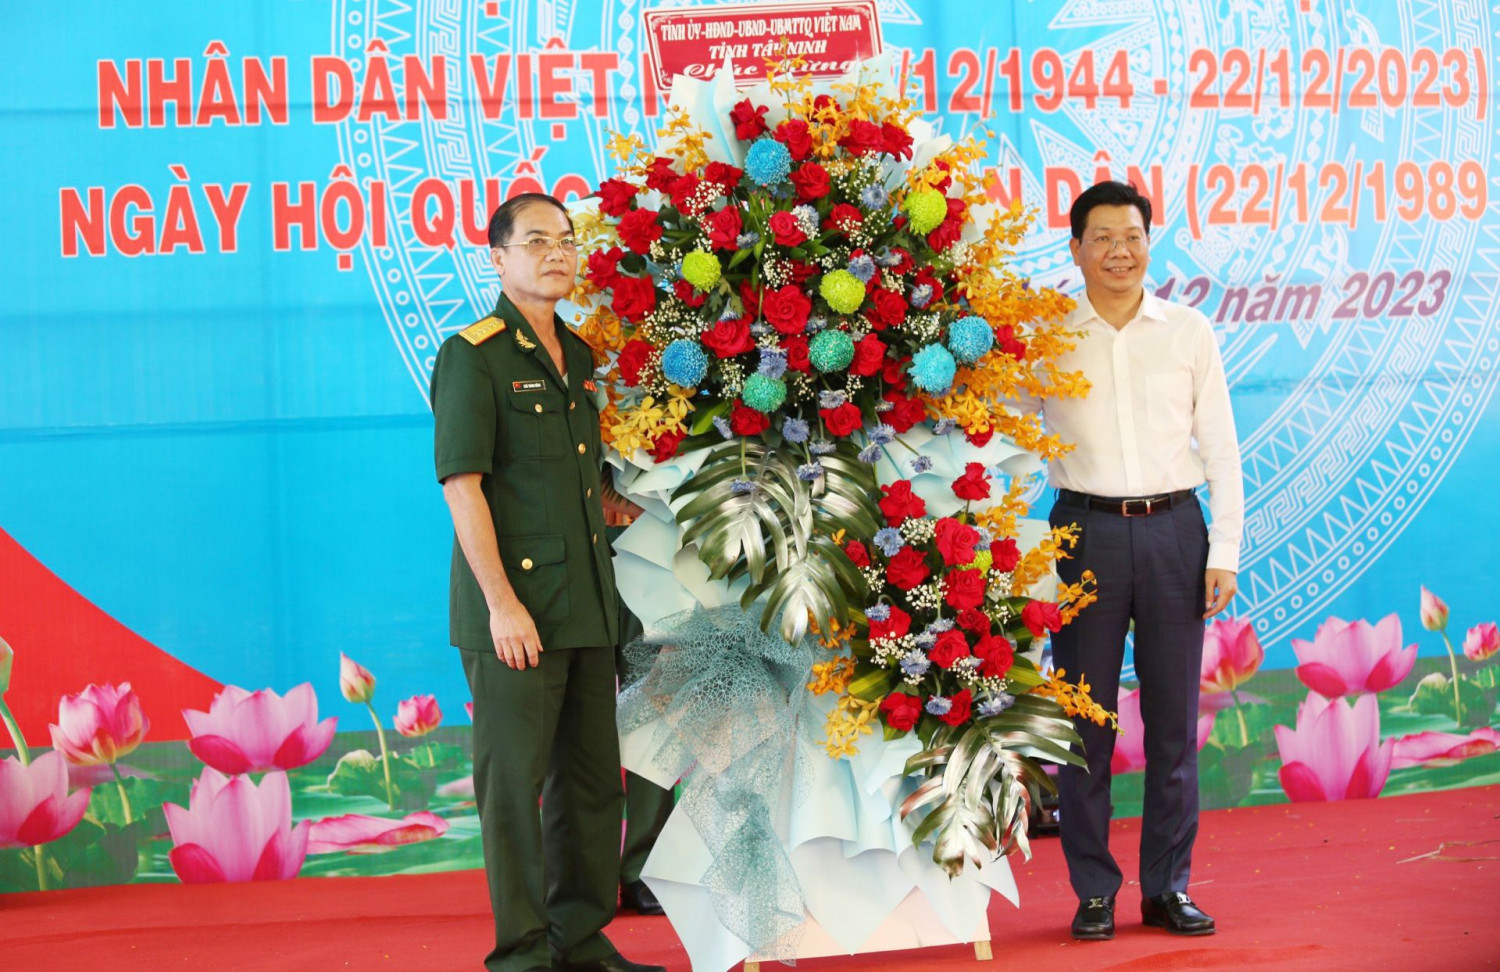 Bước vào thời kỳ đổi mới đất nước, LLVT Tây Ninh cùng với hệ thống chính trị đã có những đóng góp xứng đáng vào sự phát triển kinh tế xã hội, củng cố quốc phòng an ninh của tỉnh.